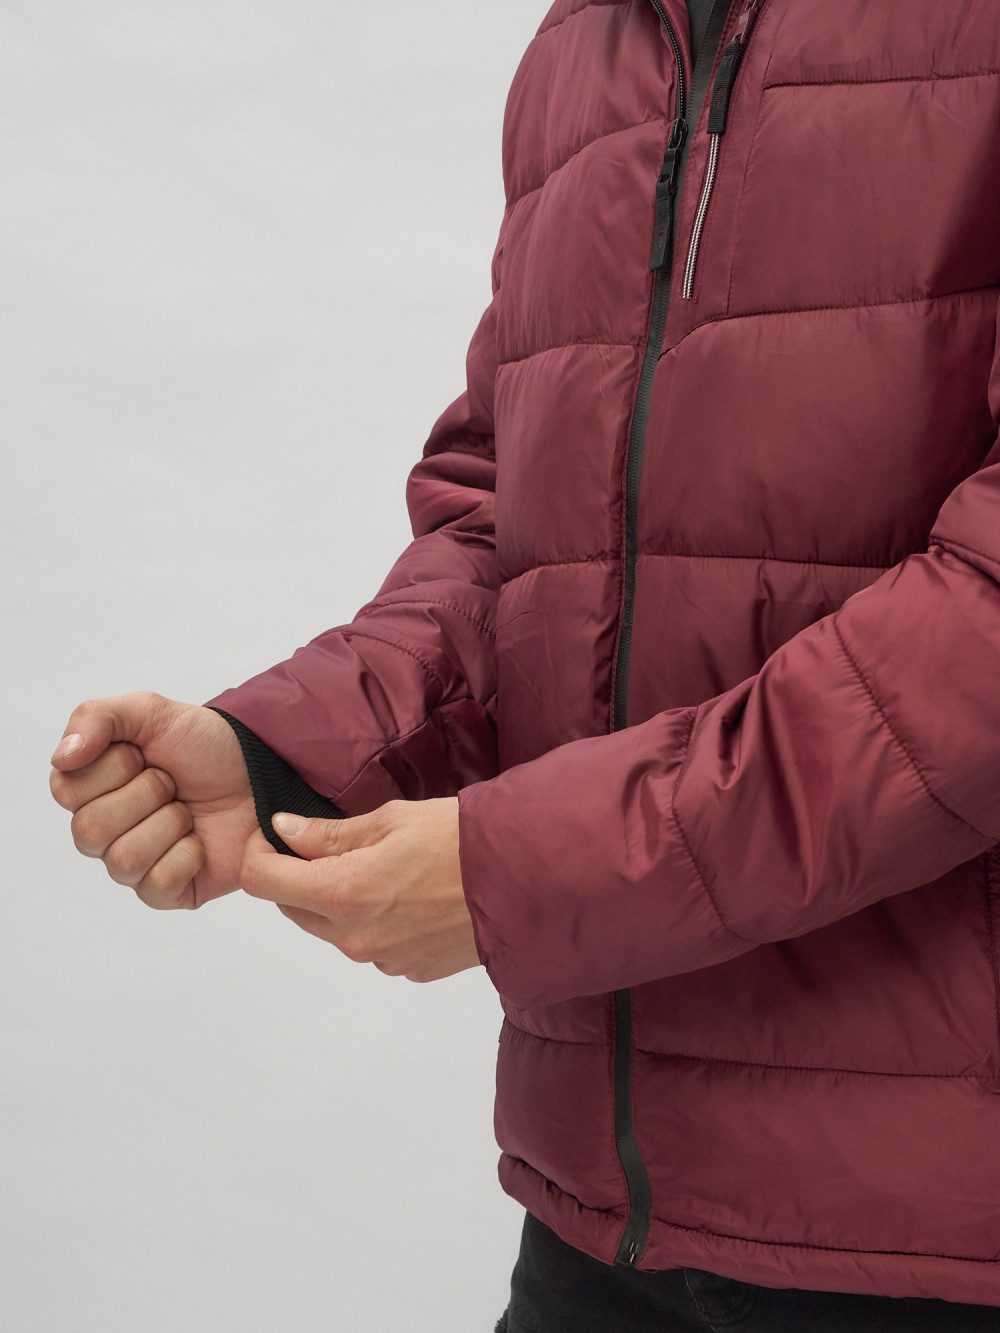 Купить куртку мужскую спортивную весеннюю оптом от производителя недорого в Москве 62186Bo 1